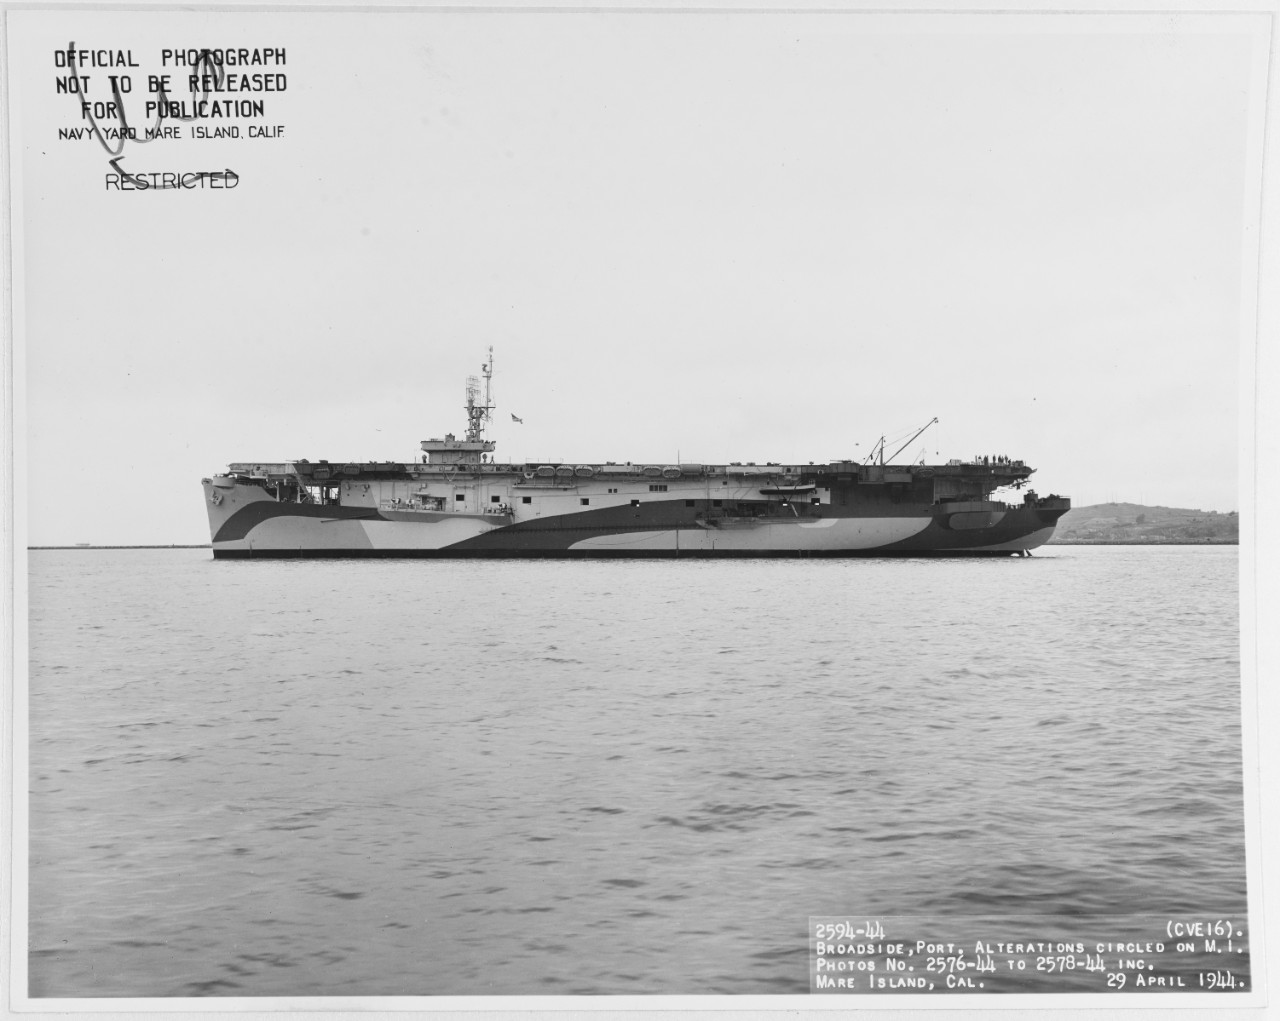 USS NASSAU (CVE-16)